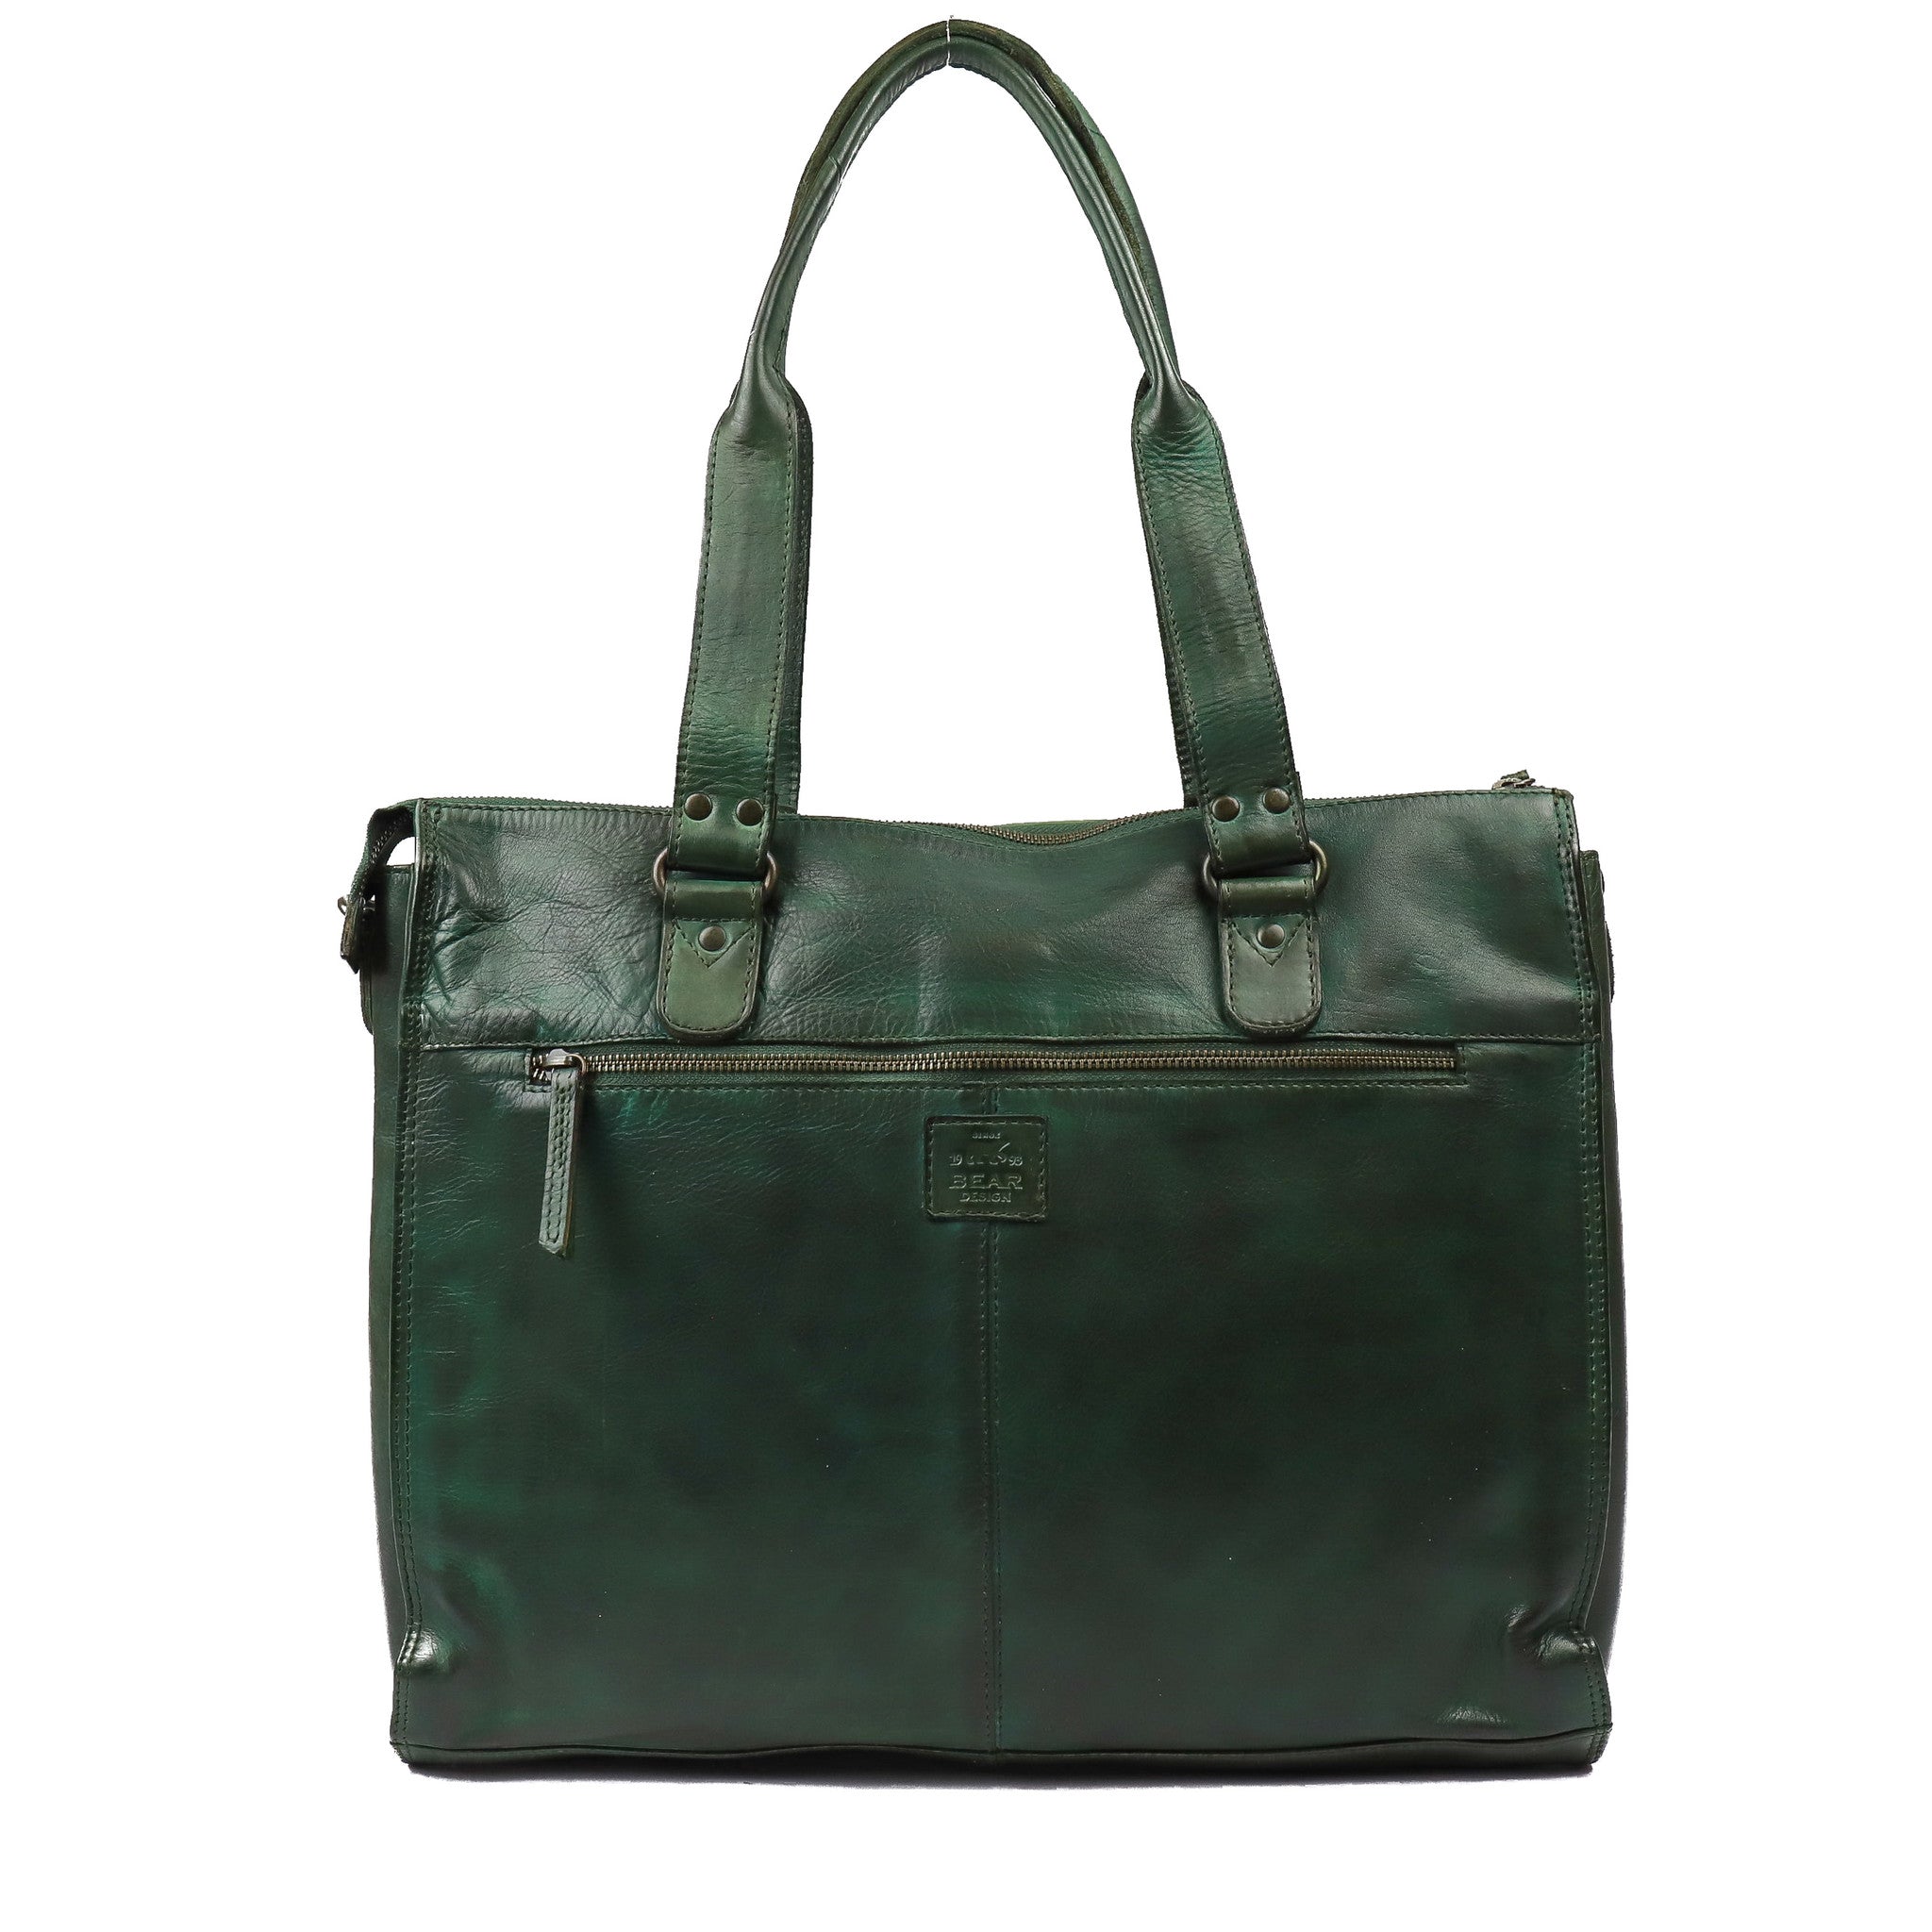 Hand/shoulder bag 'Mea' green - CL 35221